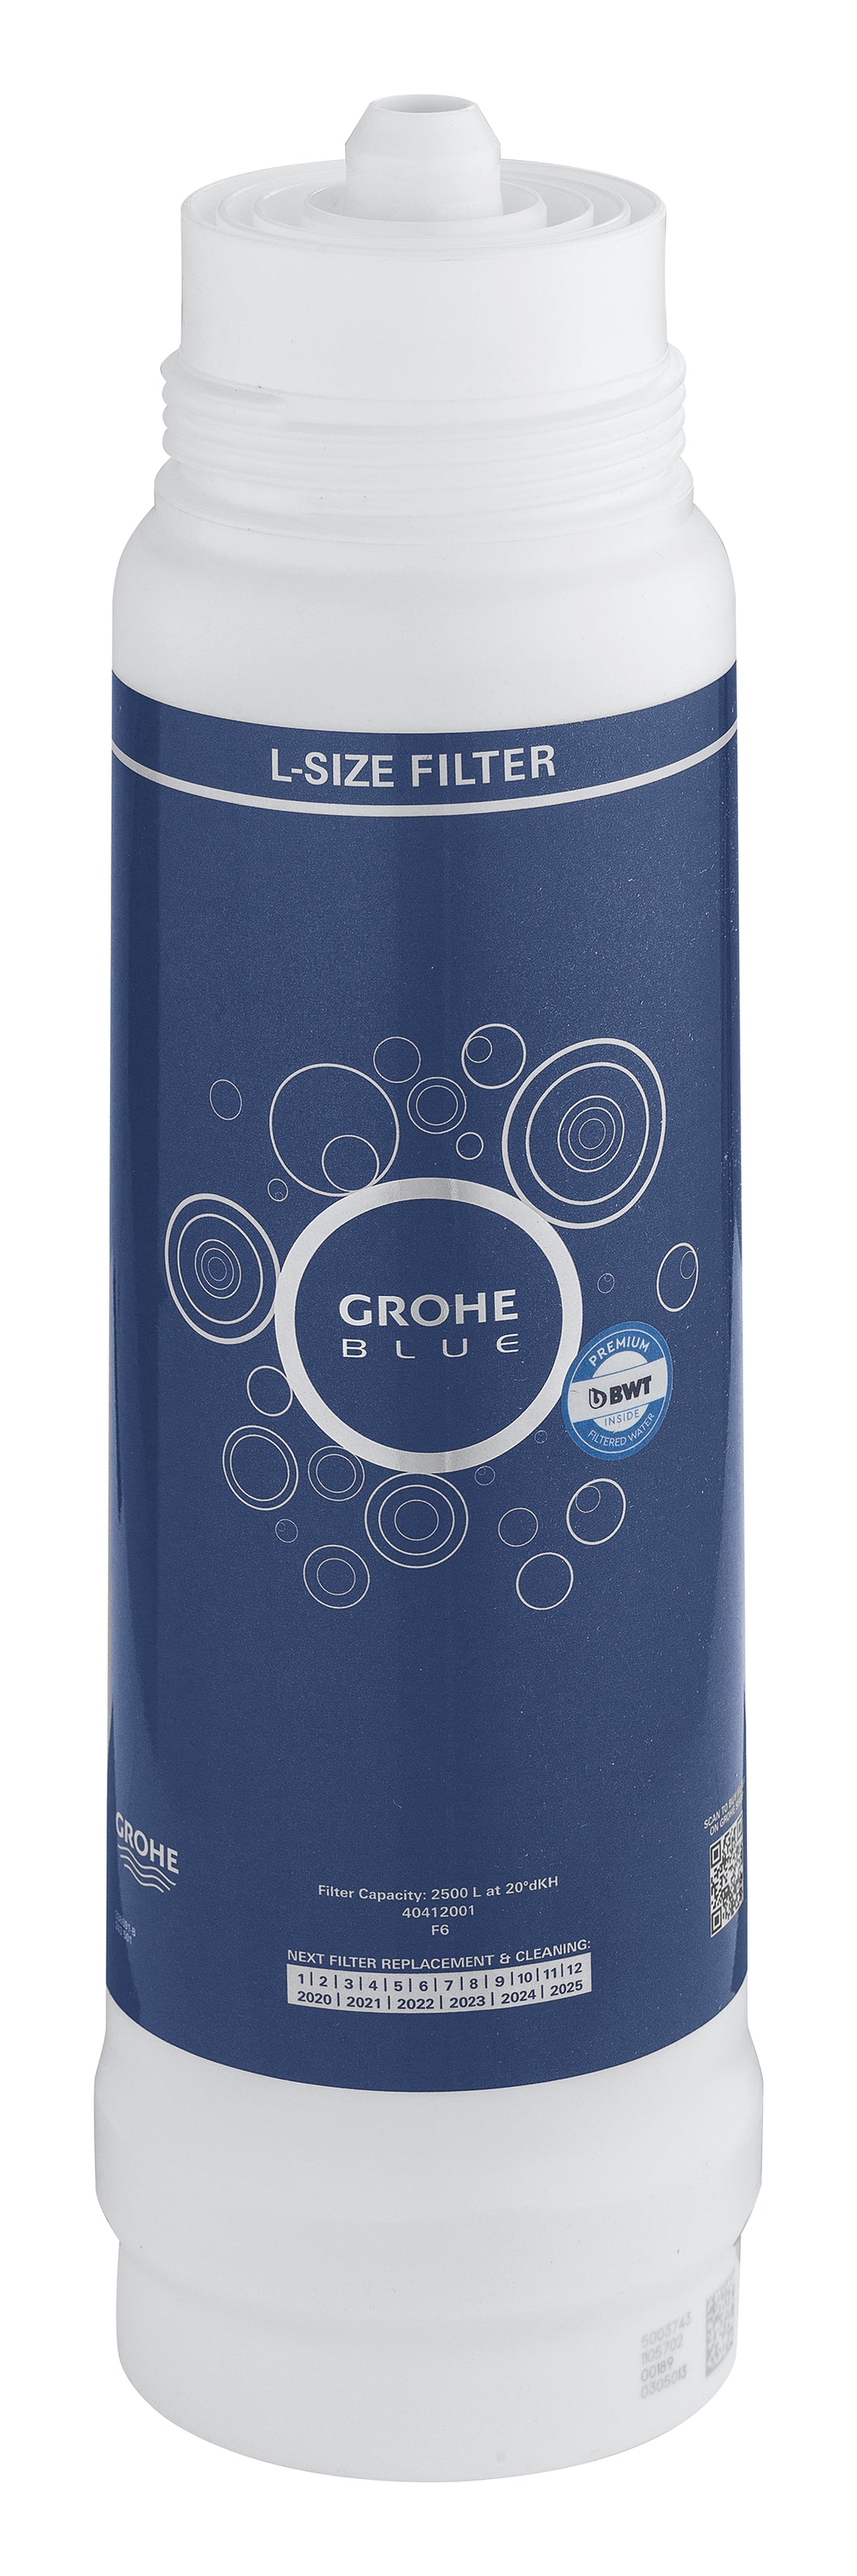 GROHE Blue Filter L-Size – für frisches, gefiltertes Wasser